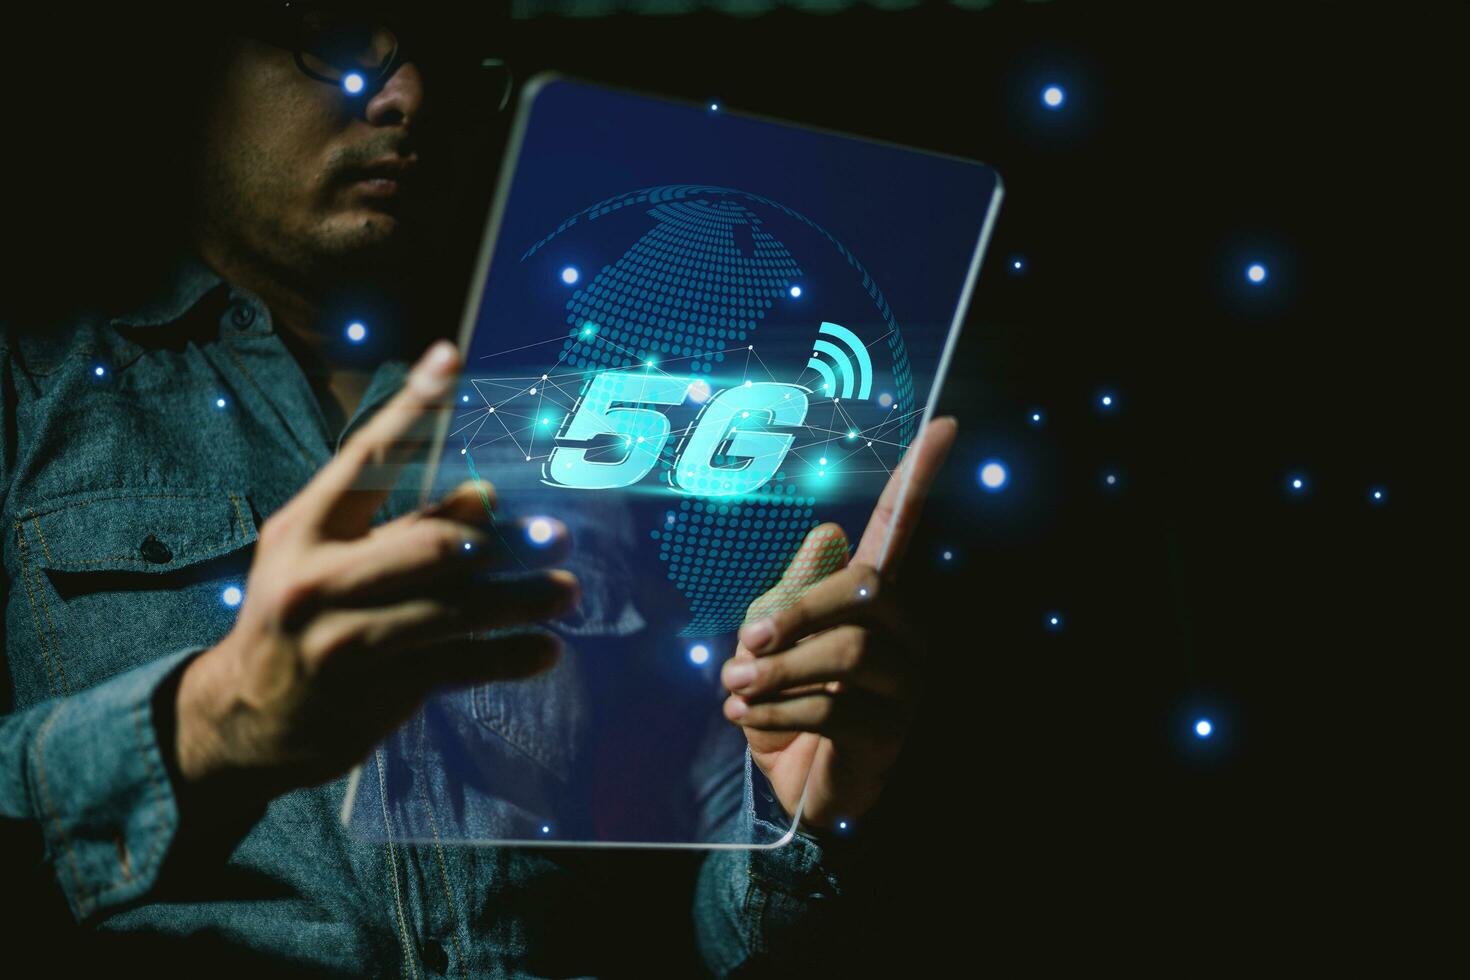 5g y Internet de cosas o iot concepto, mano conmovedor virtual 5g señal. iot es alto tecnología cuales cada dispositivo será conectar y controlar por 5g alto velocidad Internet. foto